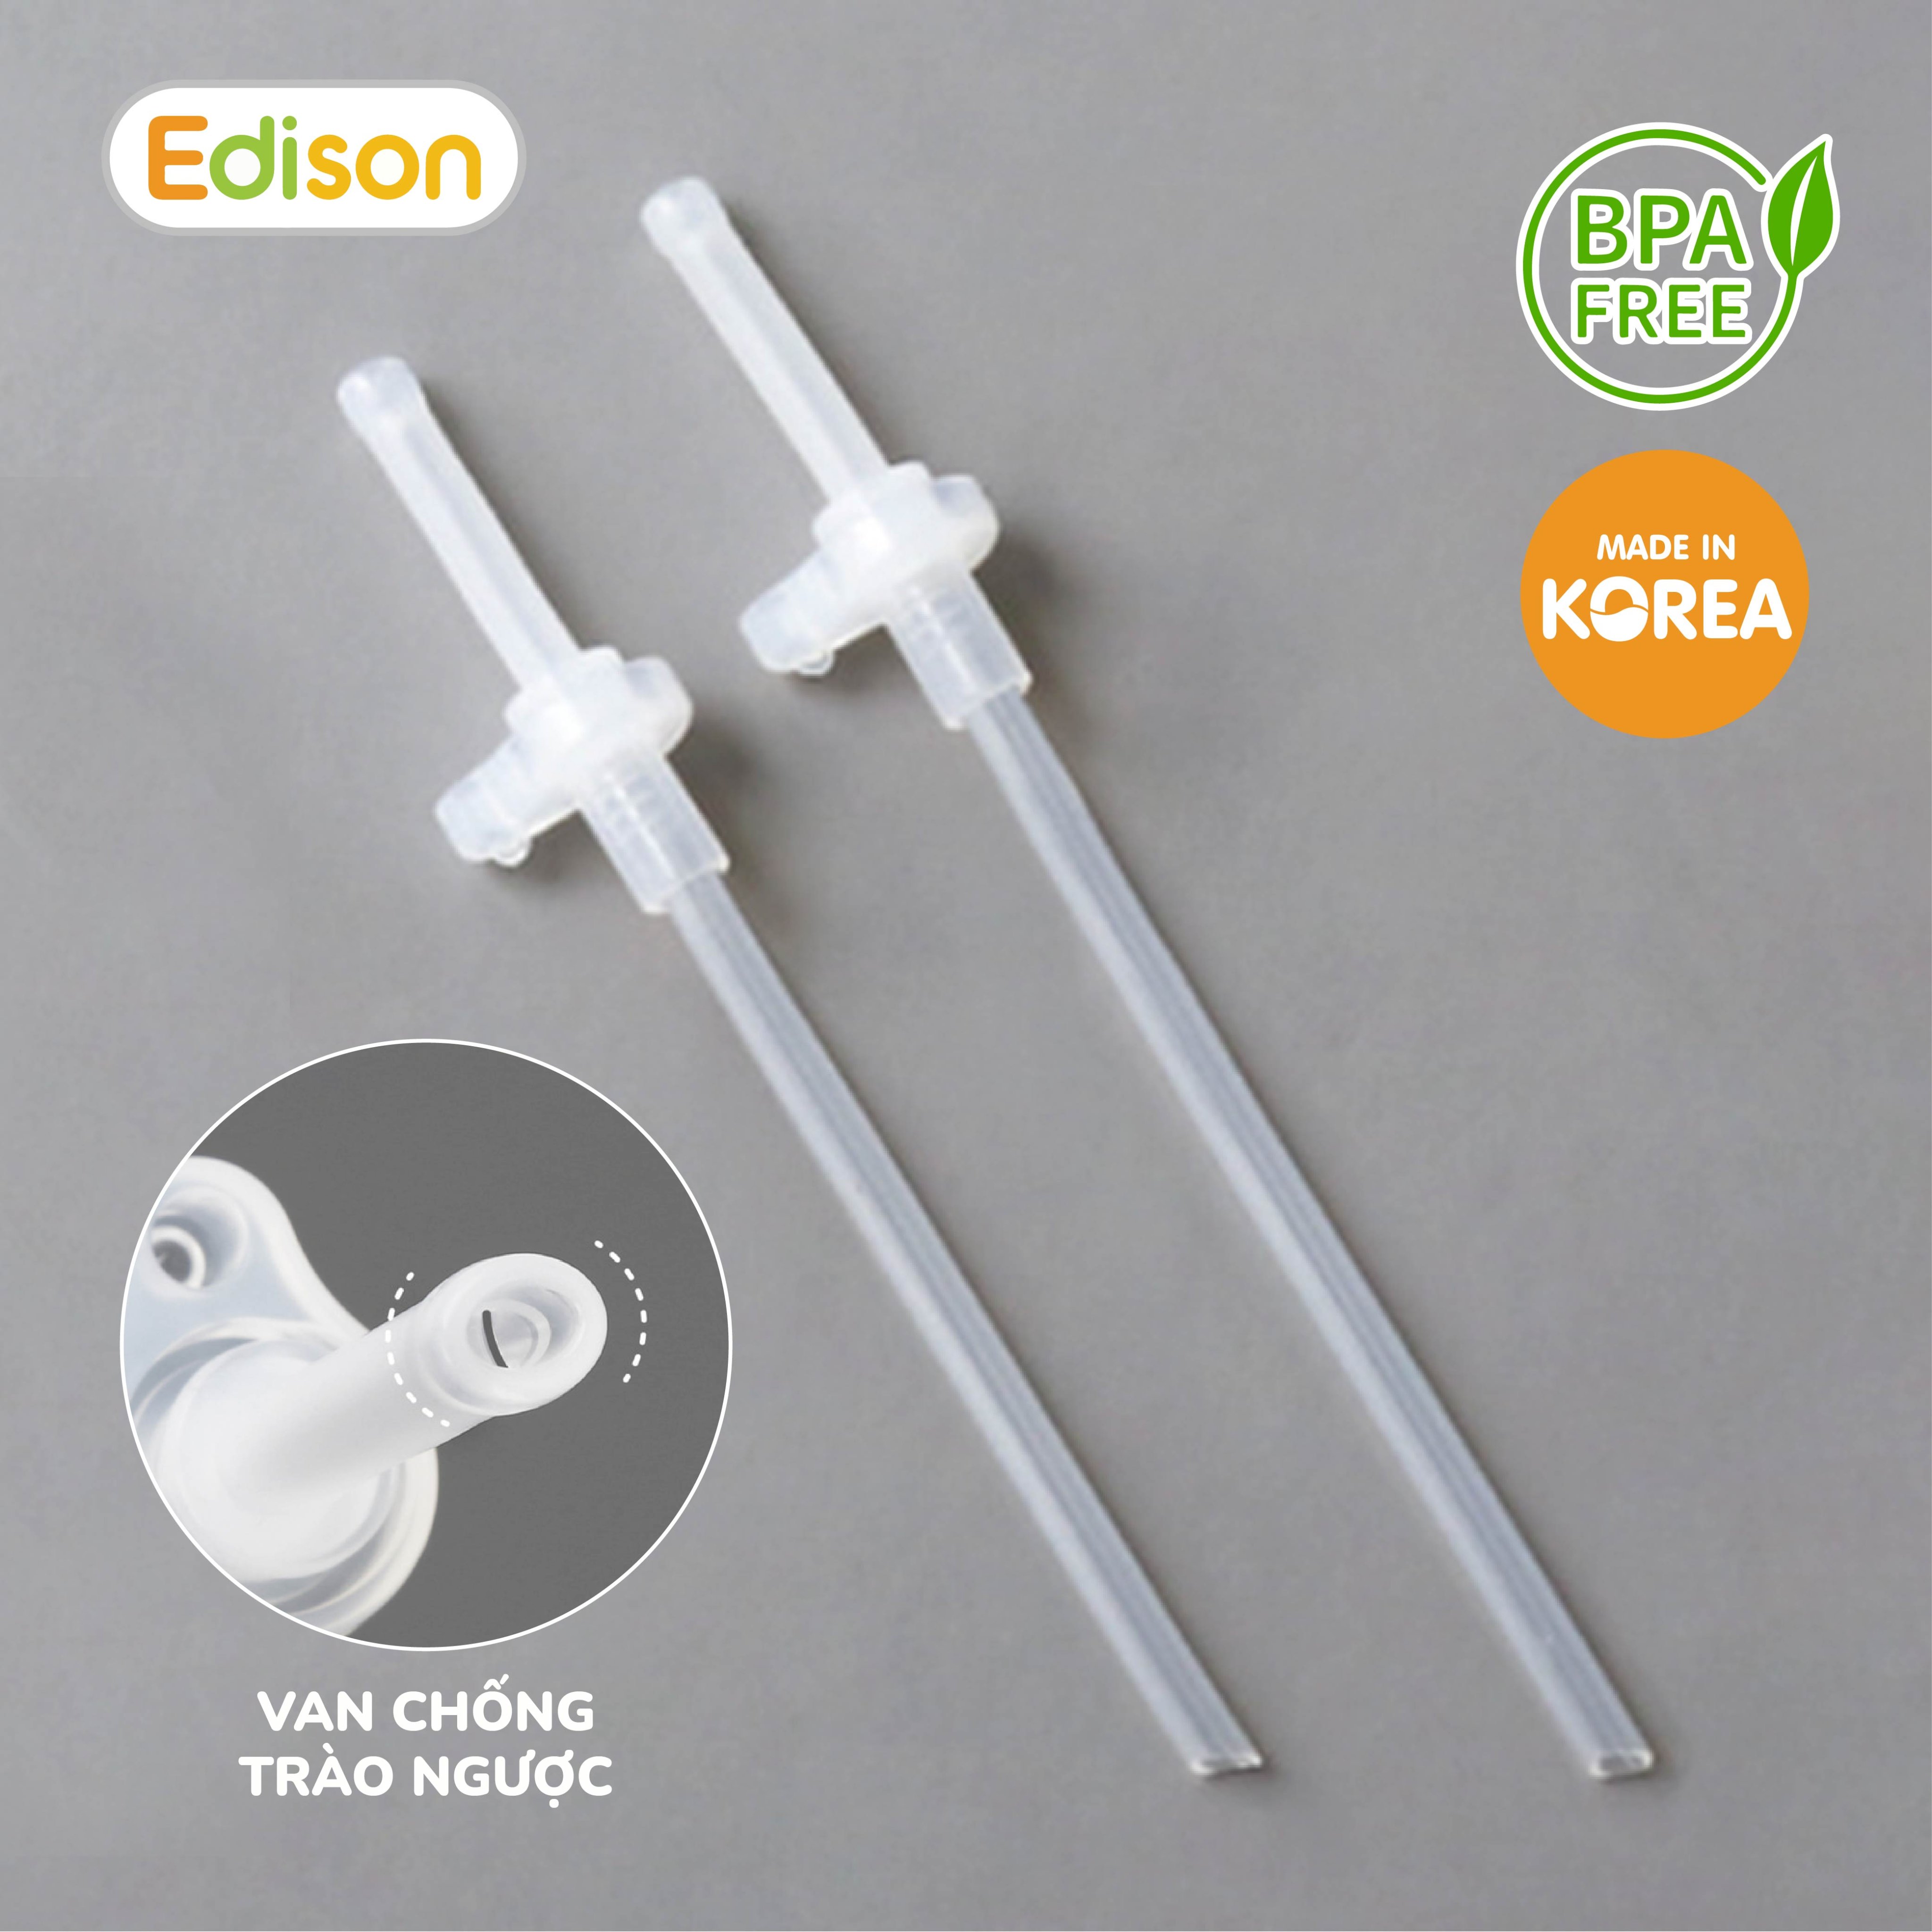 Set 2 Ống hút thay thế bình tập uống và bình nước Edison Hàn Quốc